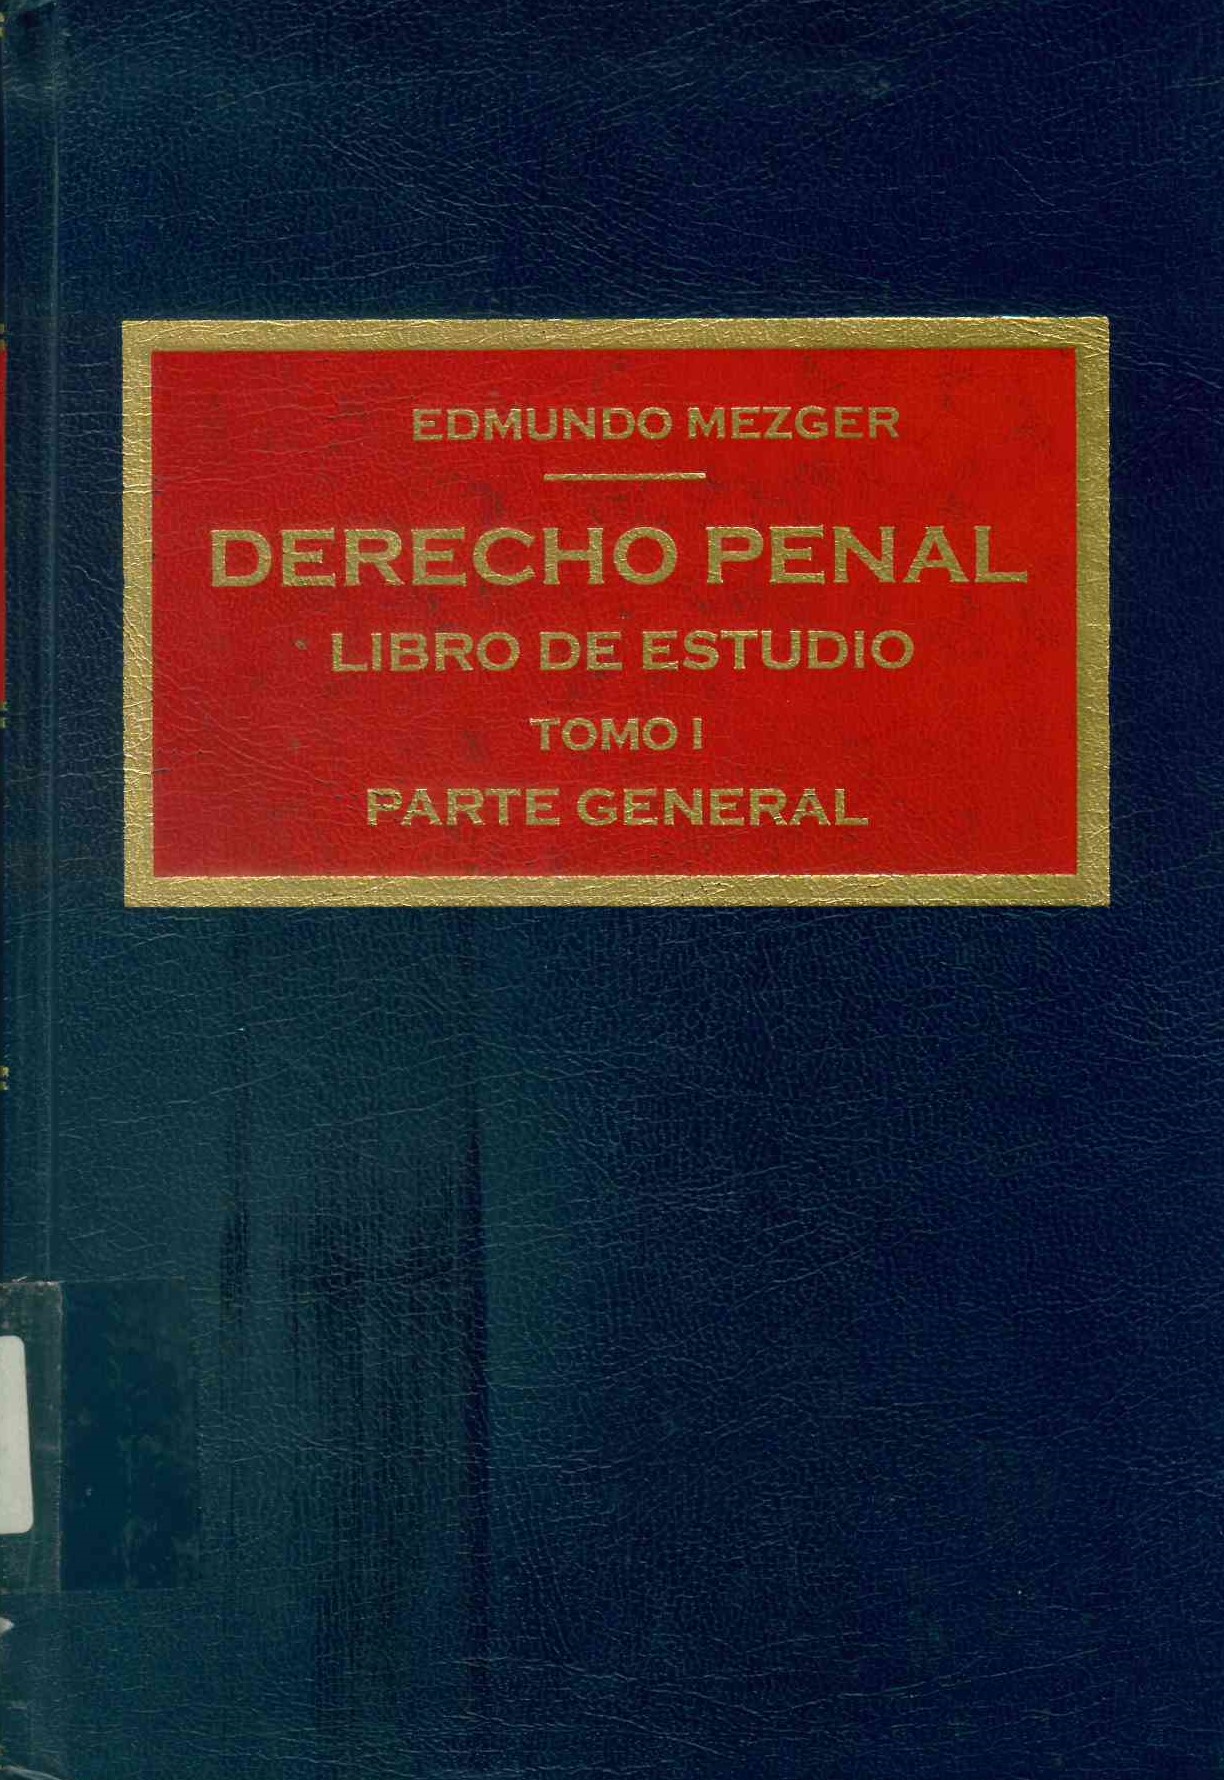 Derecho penal.  Libro de estudio.